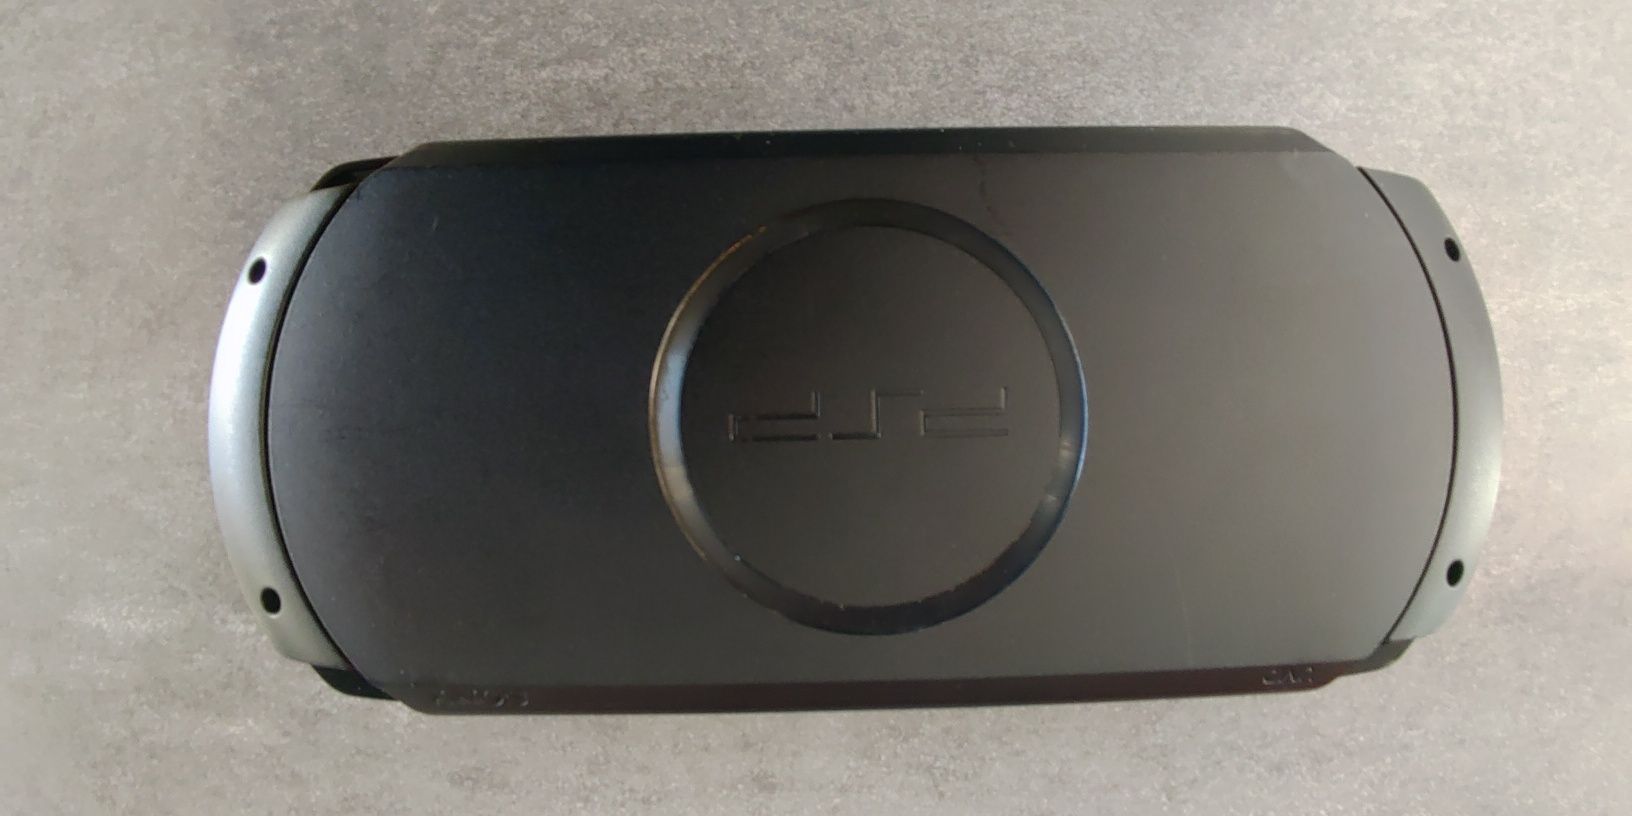 PSP - E1004 z kartą pamięci i grami